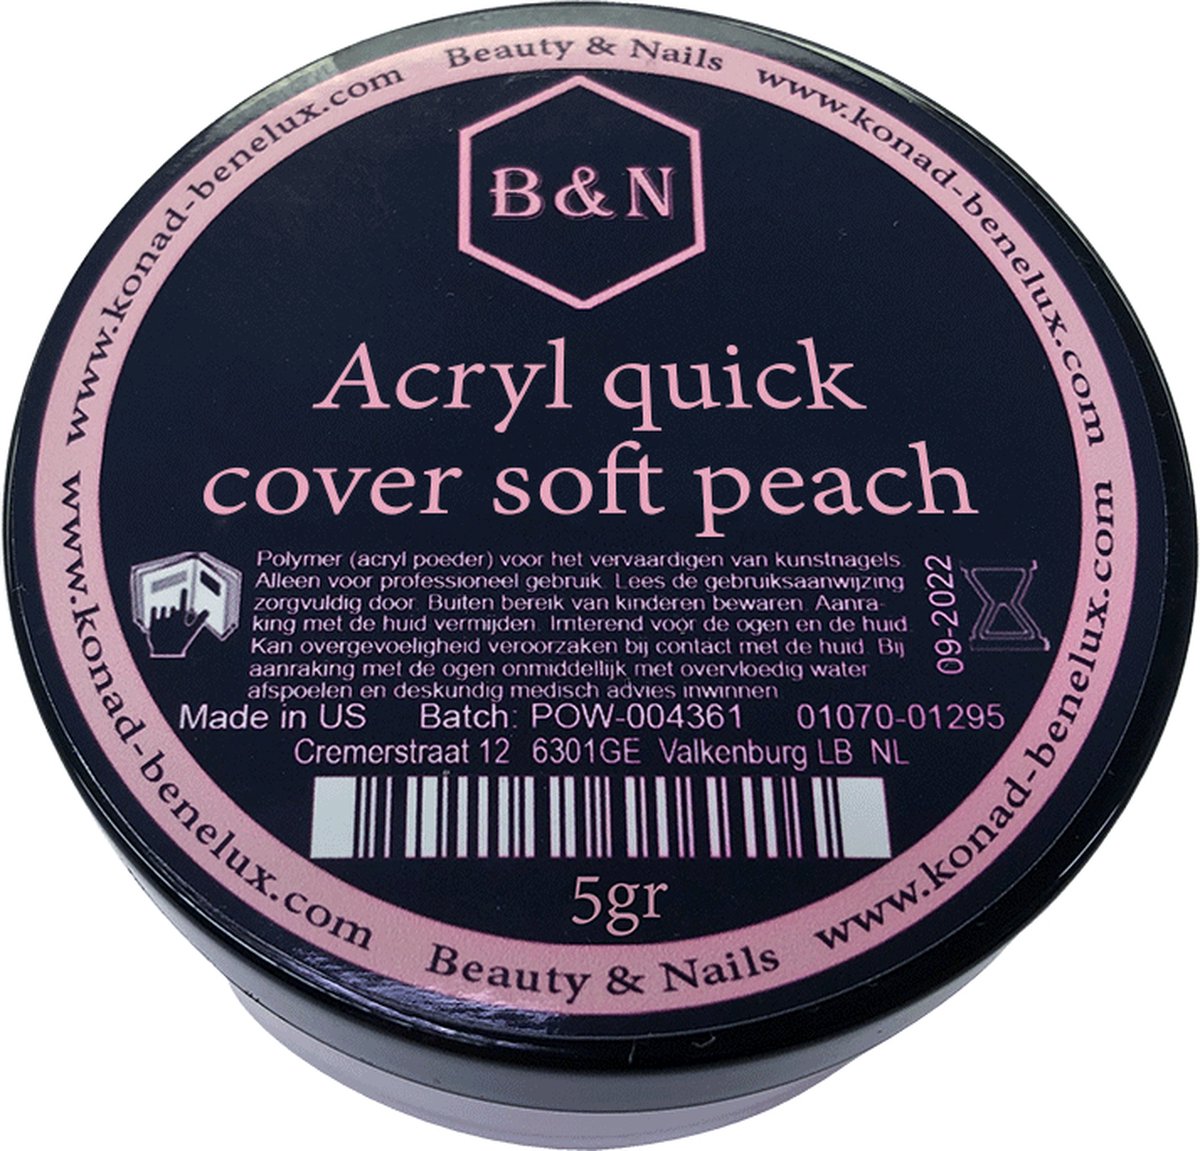 Acryl - quick cover soft peach - 5 gr | B&N - acrylpoeder - VEGAN - acrylpoeder